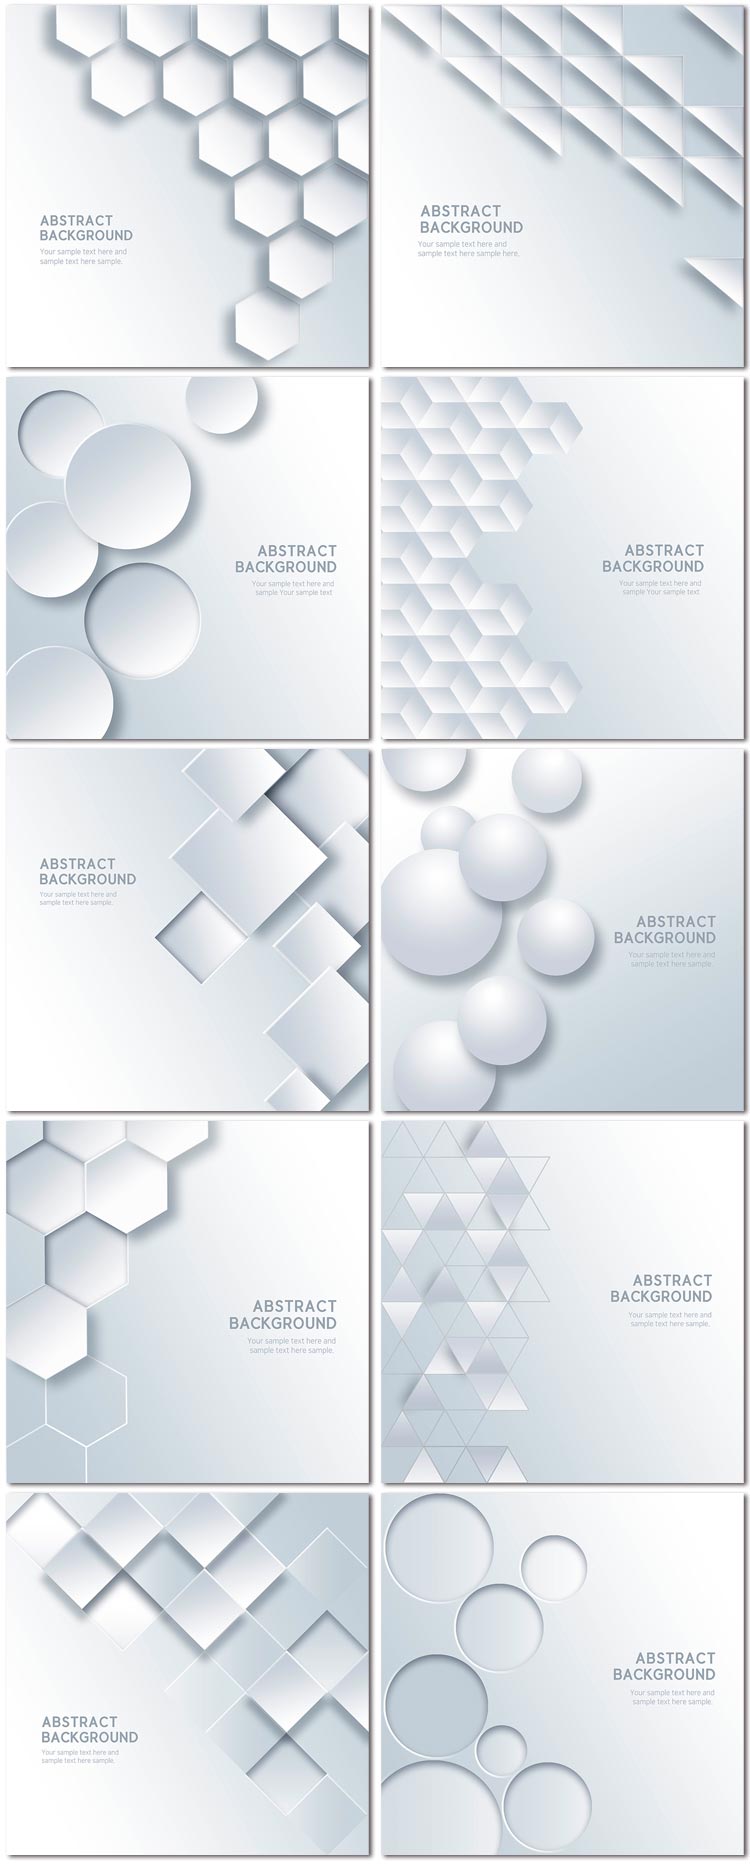 时尚简约线条几何图形科技商务立体psd海报展板ppt设计素材模板